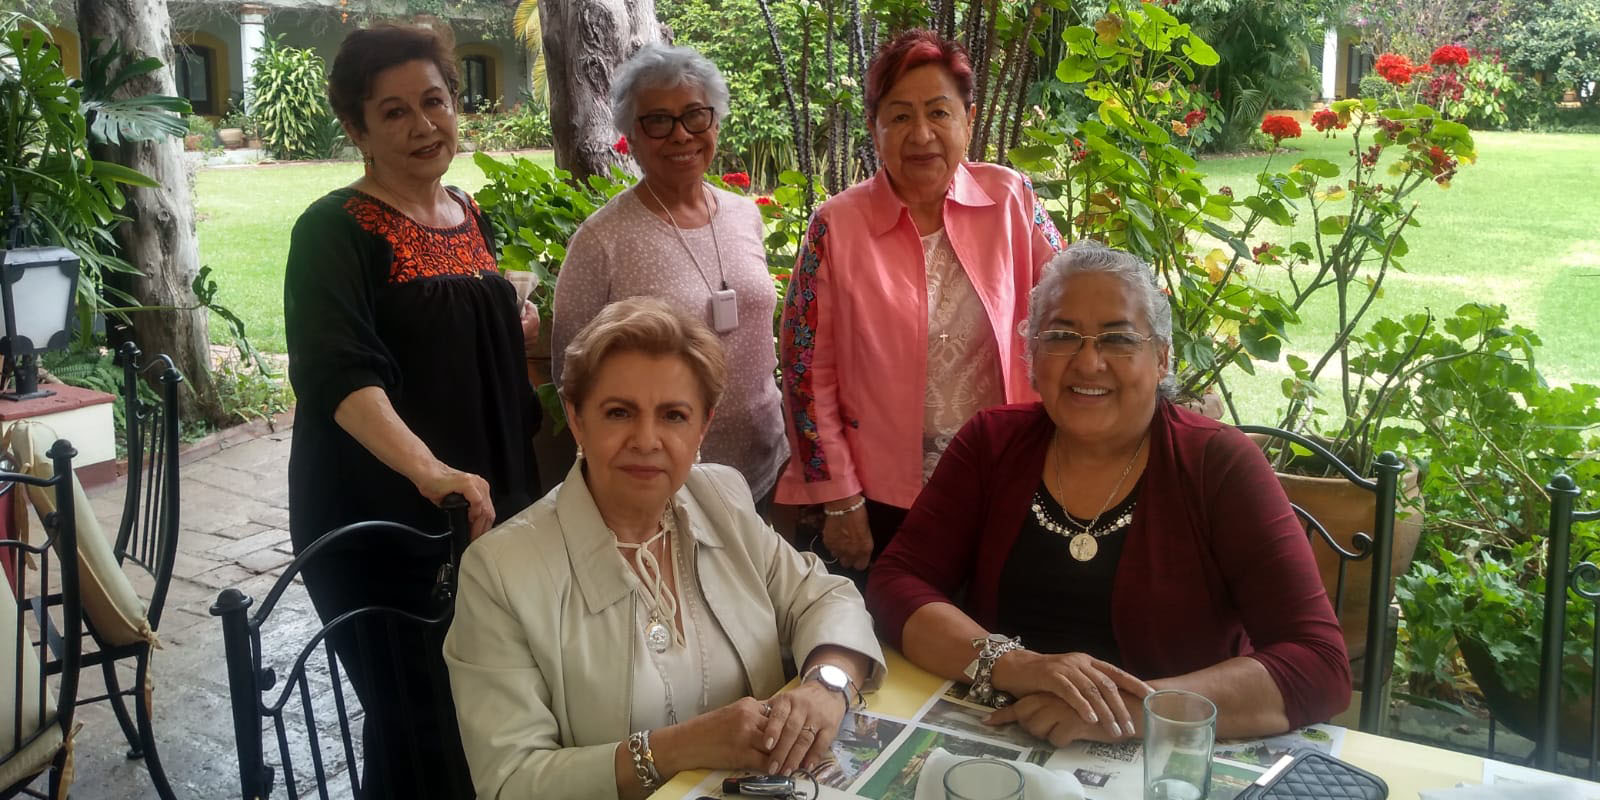 Viven amigas ameno reencuentro | El Imparcial de Oaxaca